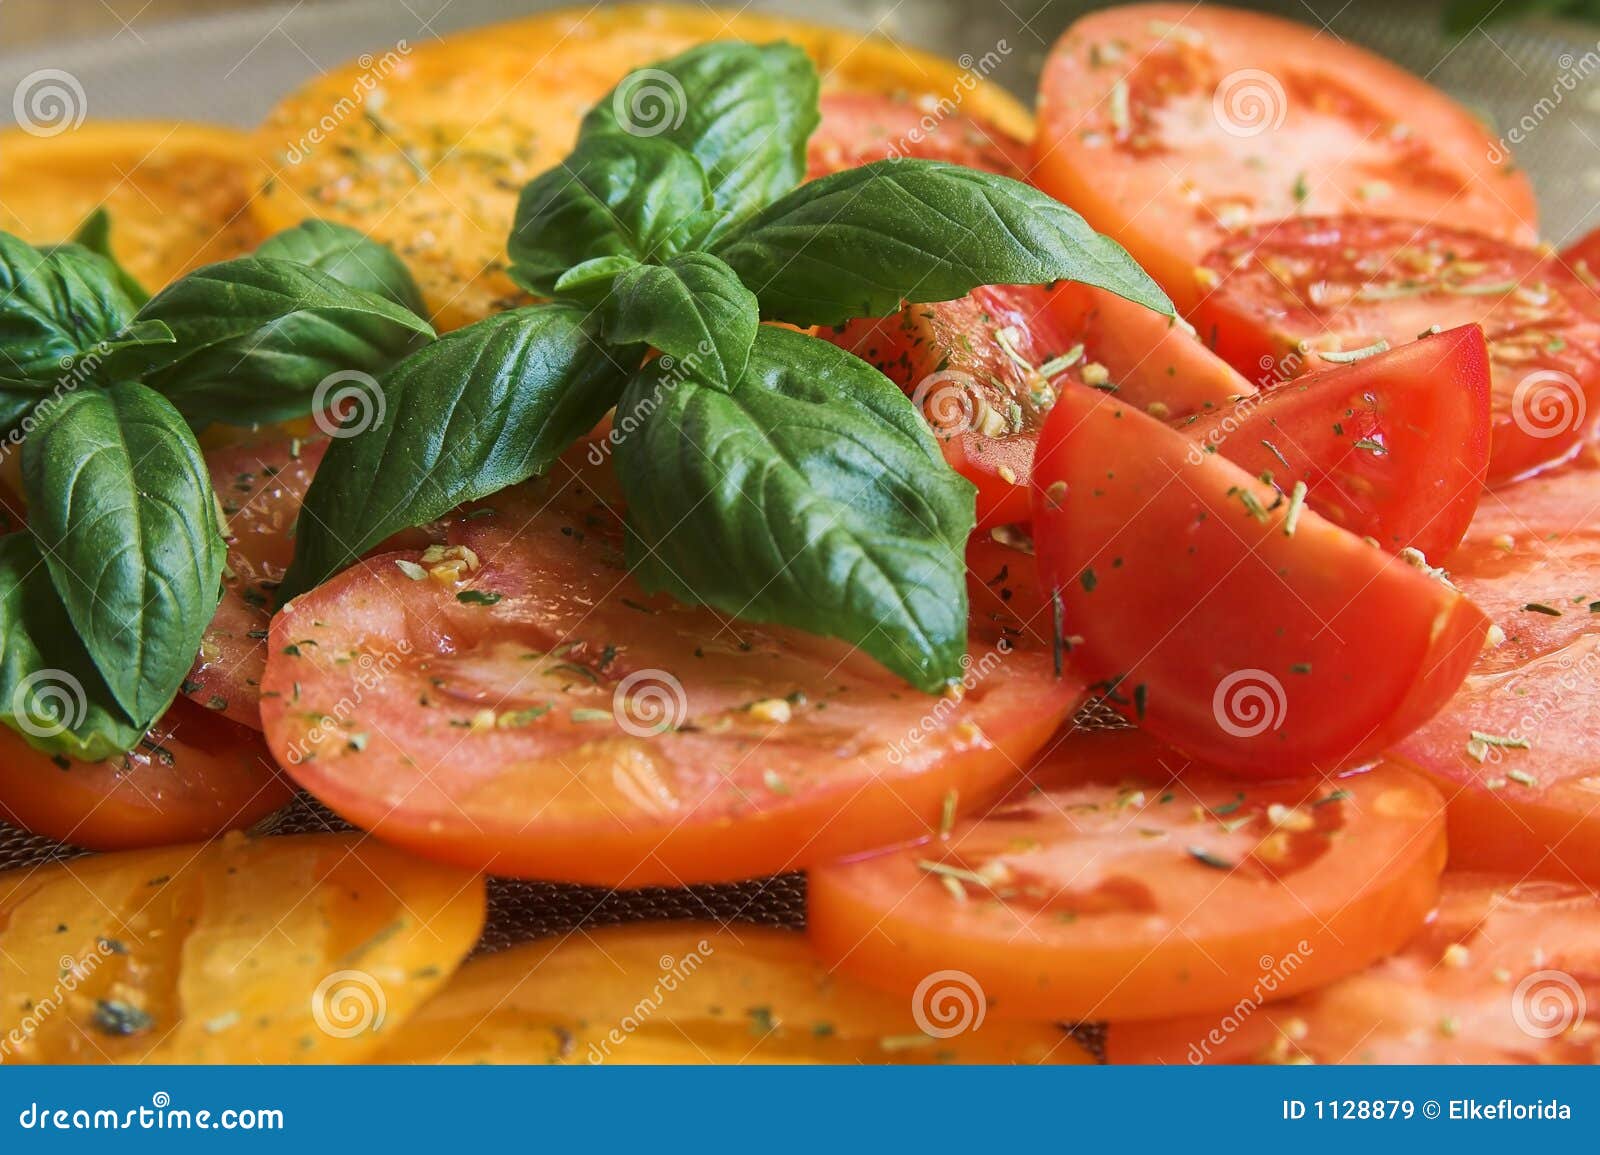 Tomaten mit Basilikum stockbild. Bild von frisch, schmieröl - 1128879